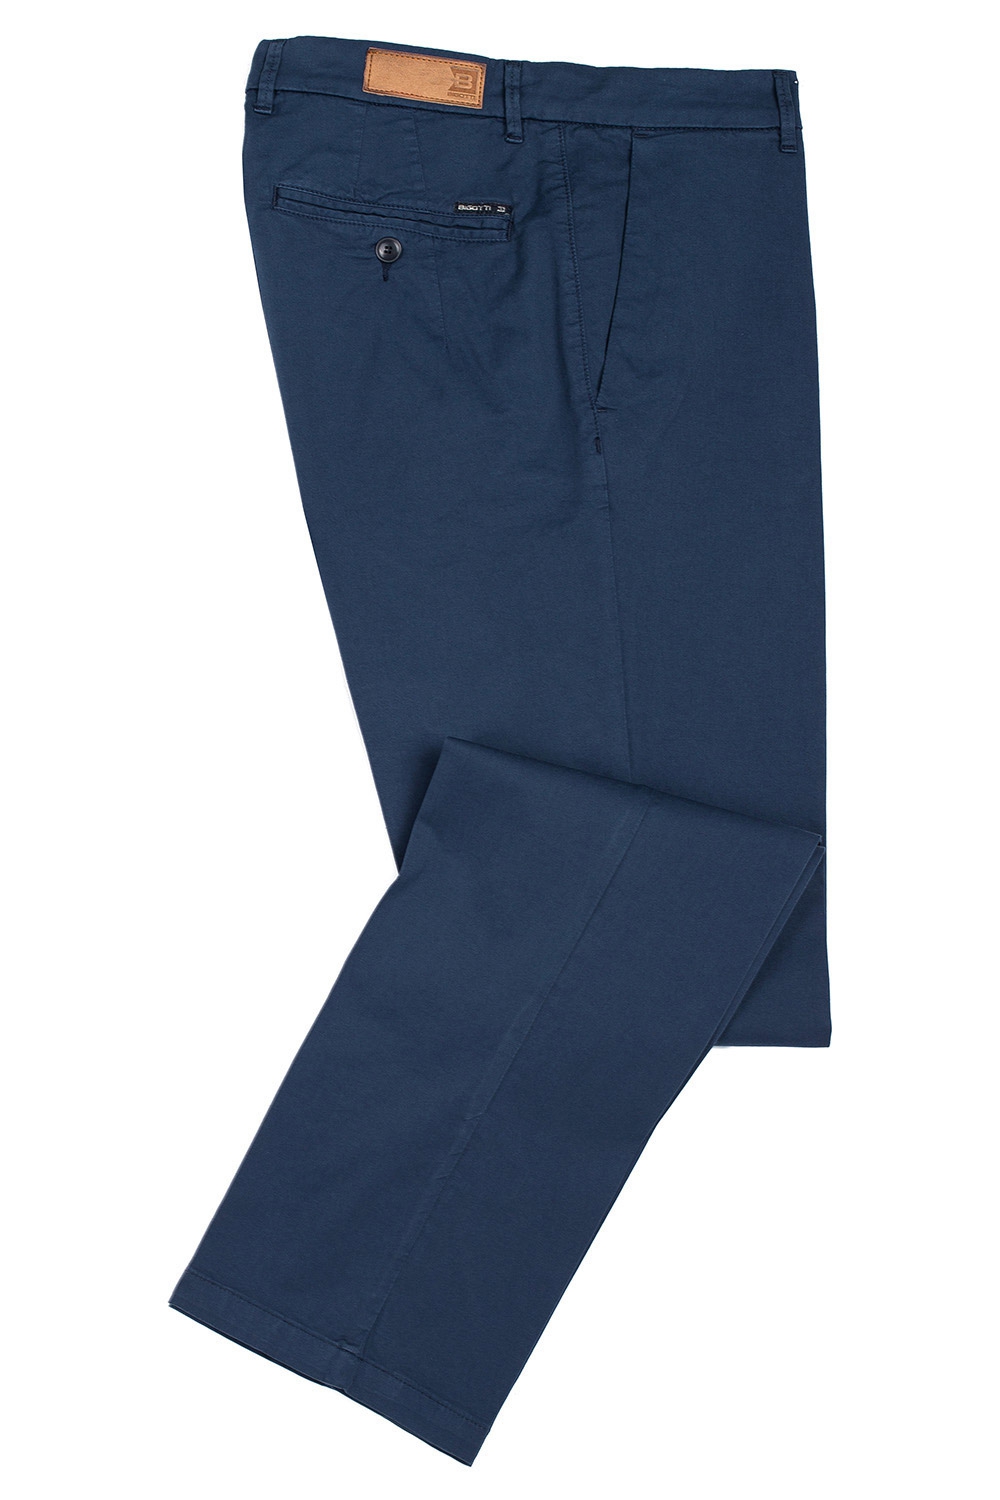 Pantaloni regular como bleumarin uni 0